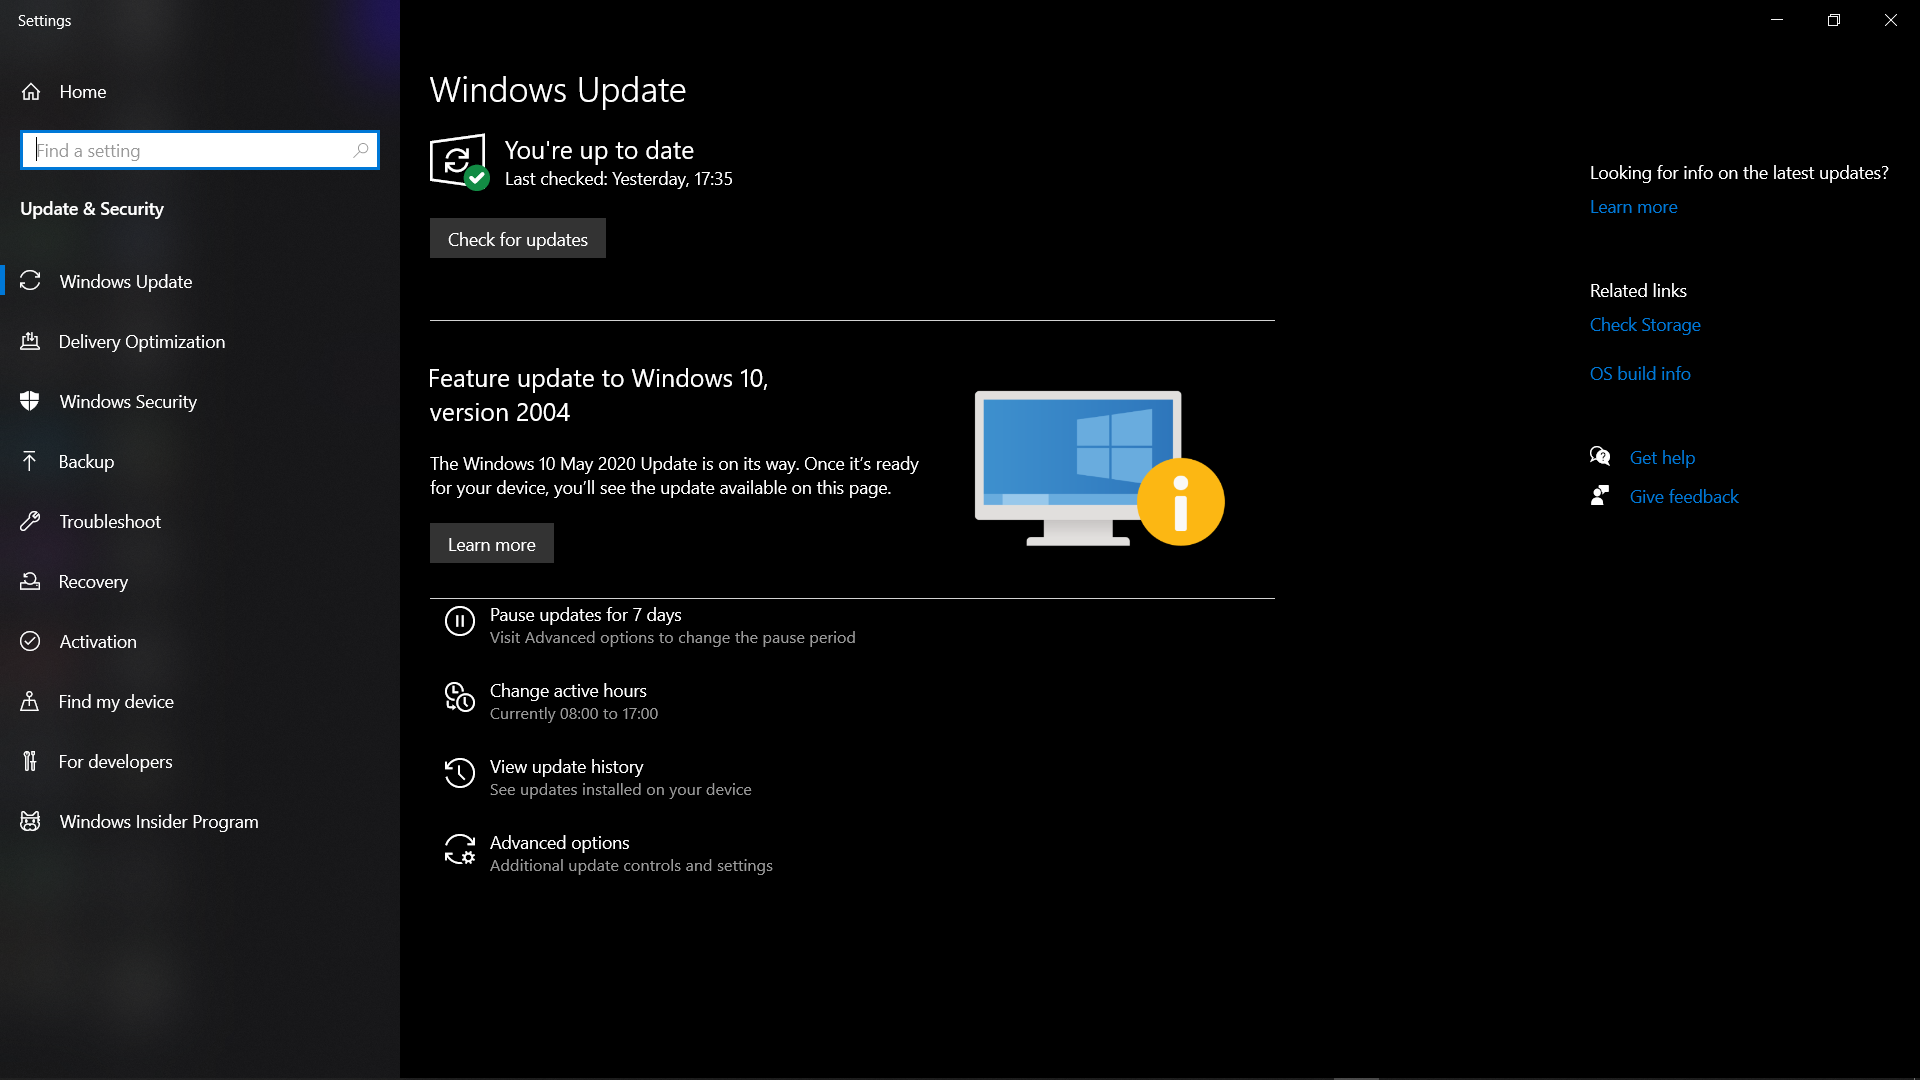 Windows update version 2004 a397a2a3-1253-44eb-b987-858717b763a3?upload=true.png